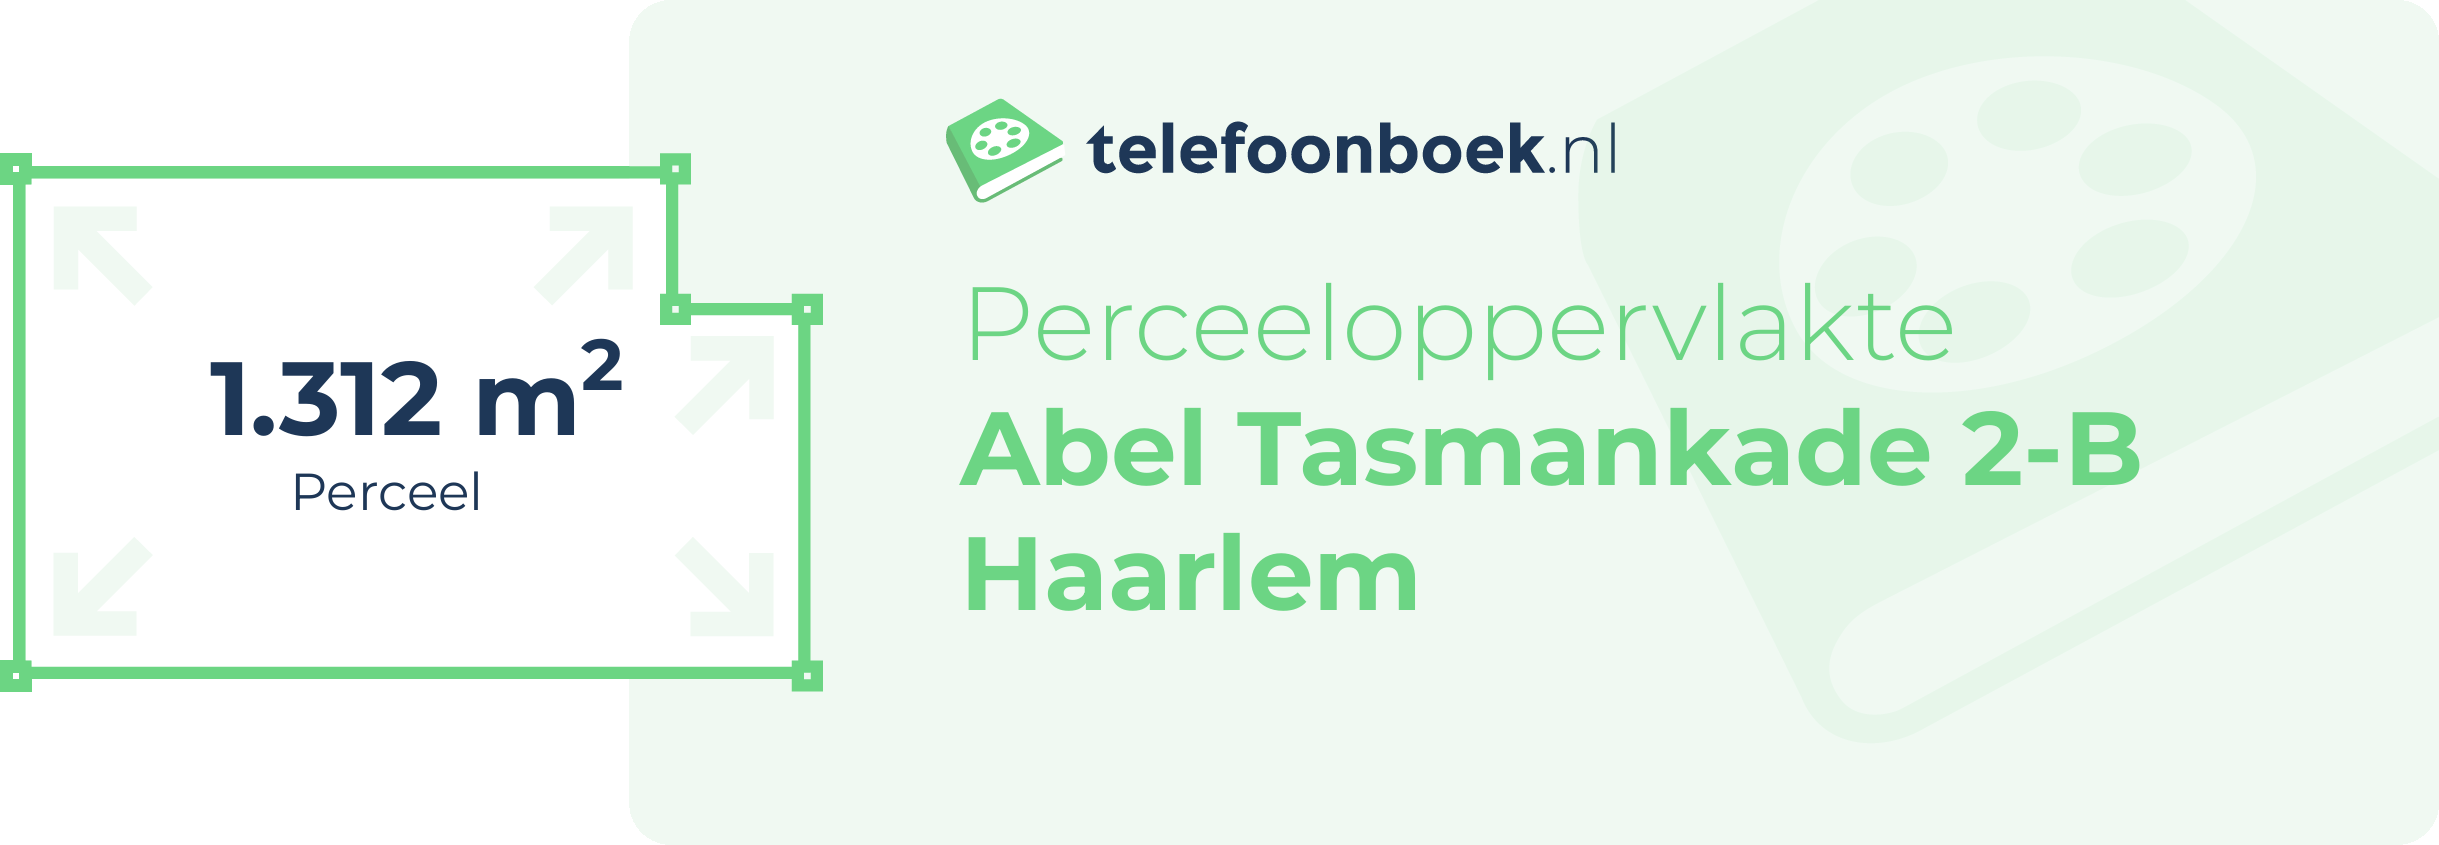 Perceeloppervlakte Abel Tasmankade 2-B Haarlem